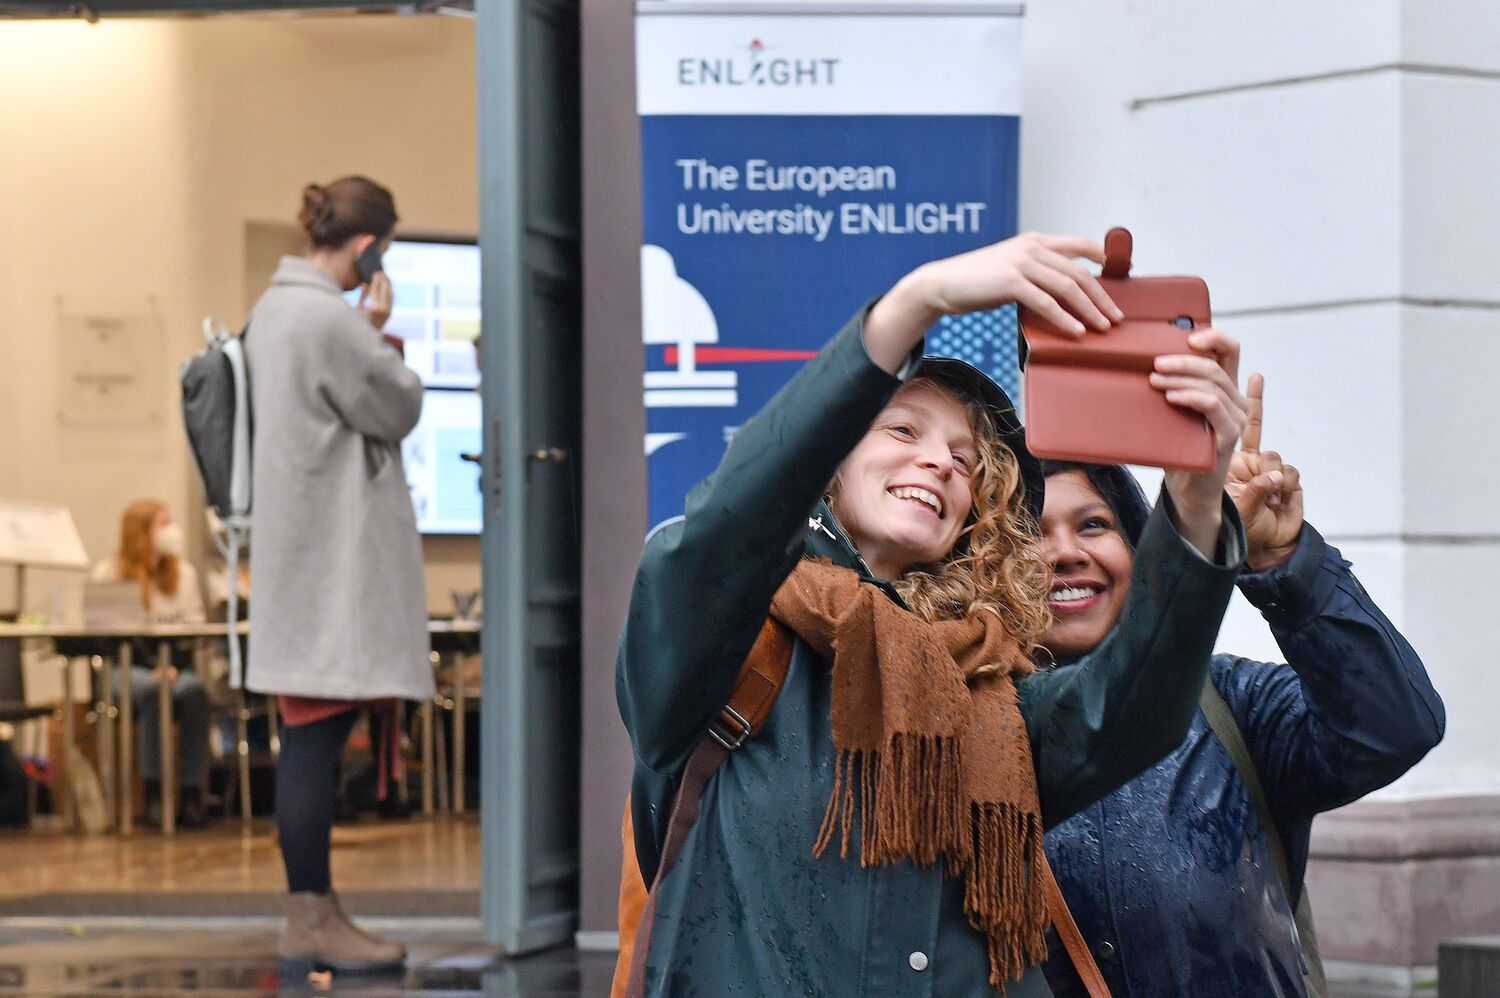 Die Universität Göttingen hat als Mitglied des europäischen Hochschulnetzwerks Enlight beim Deutschen Akademischen Austauschdienst (DAAD) Fördermittel in Höhe von 700.000 Euro für den weiteren Ausbau europäischer Strukturen eingeworben. Der DAAD fördert damit vier Jahre lang das Projekt „Enlight Transform+“, das zentrale Themen des Hochschulnetzwerks verstärken soll.